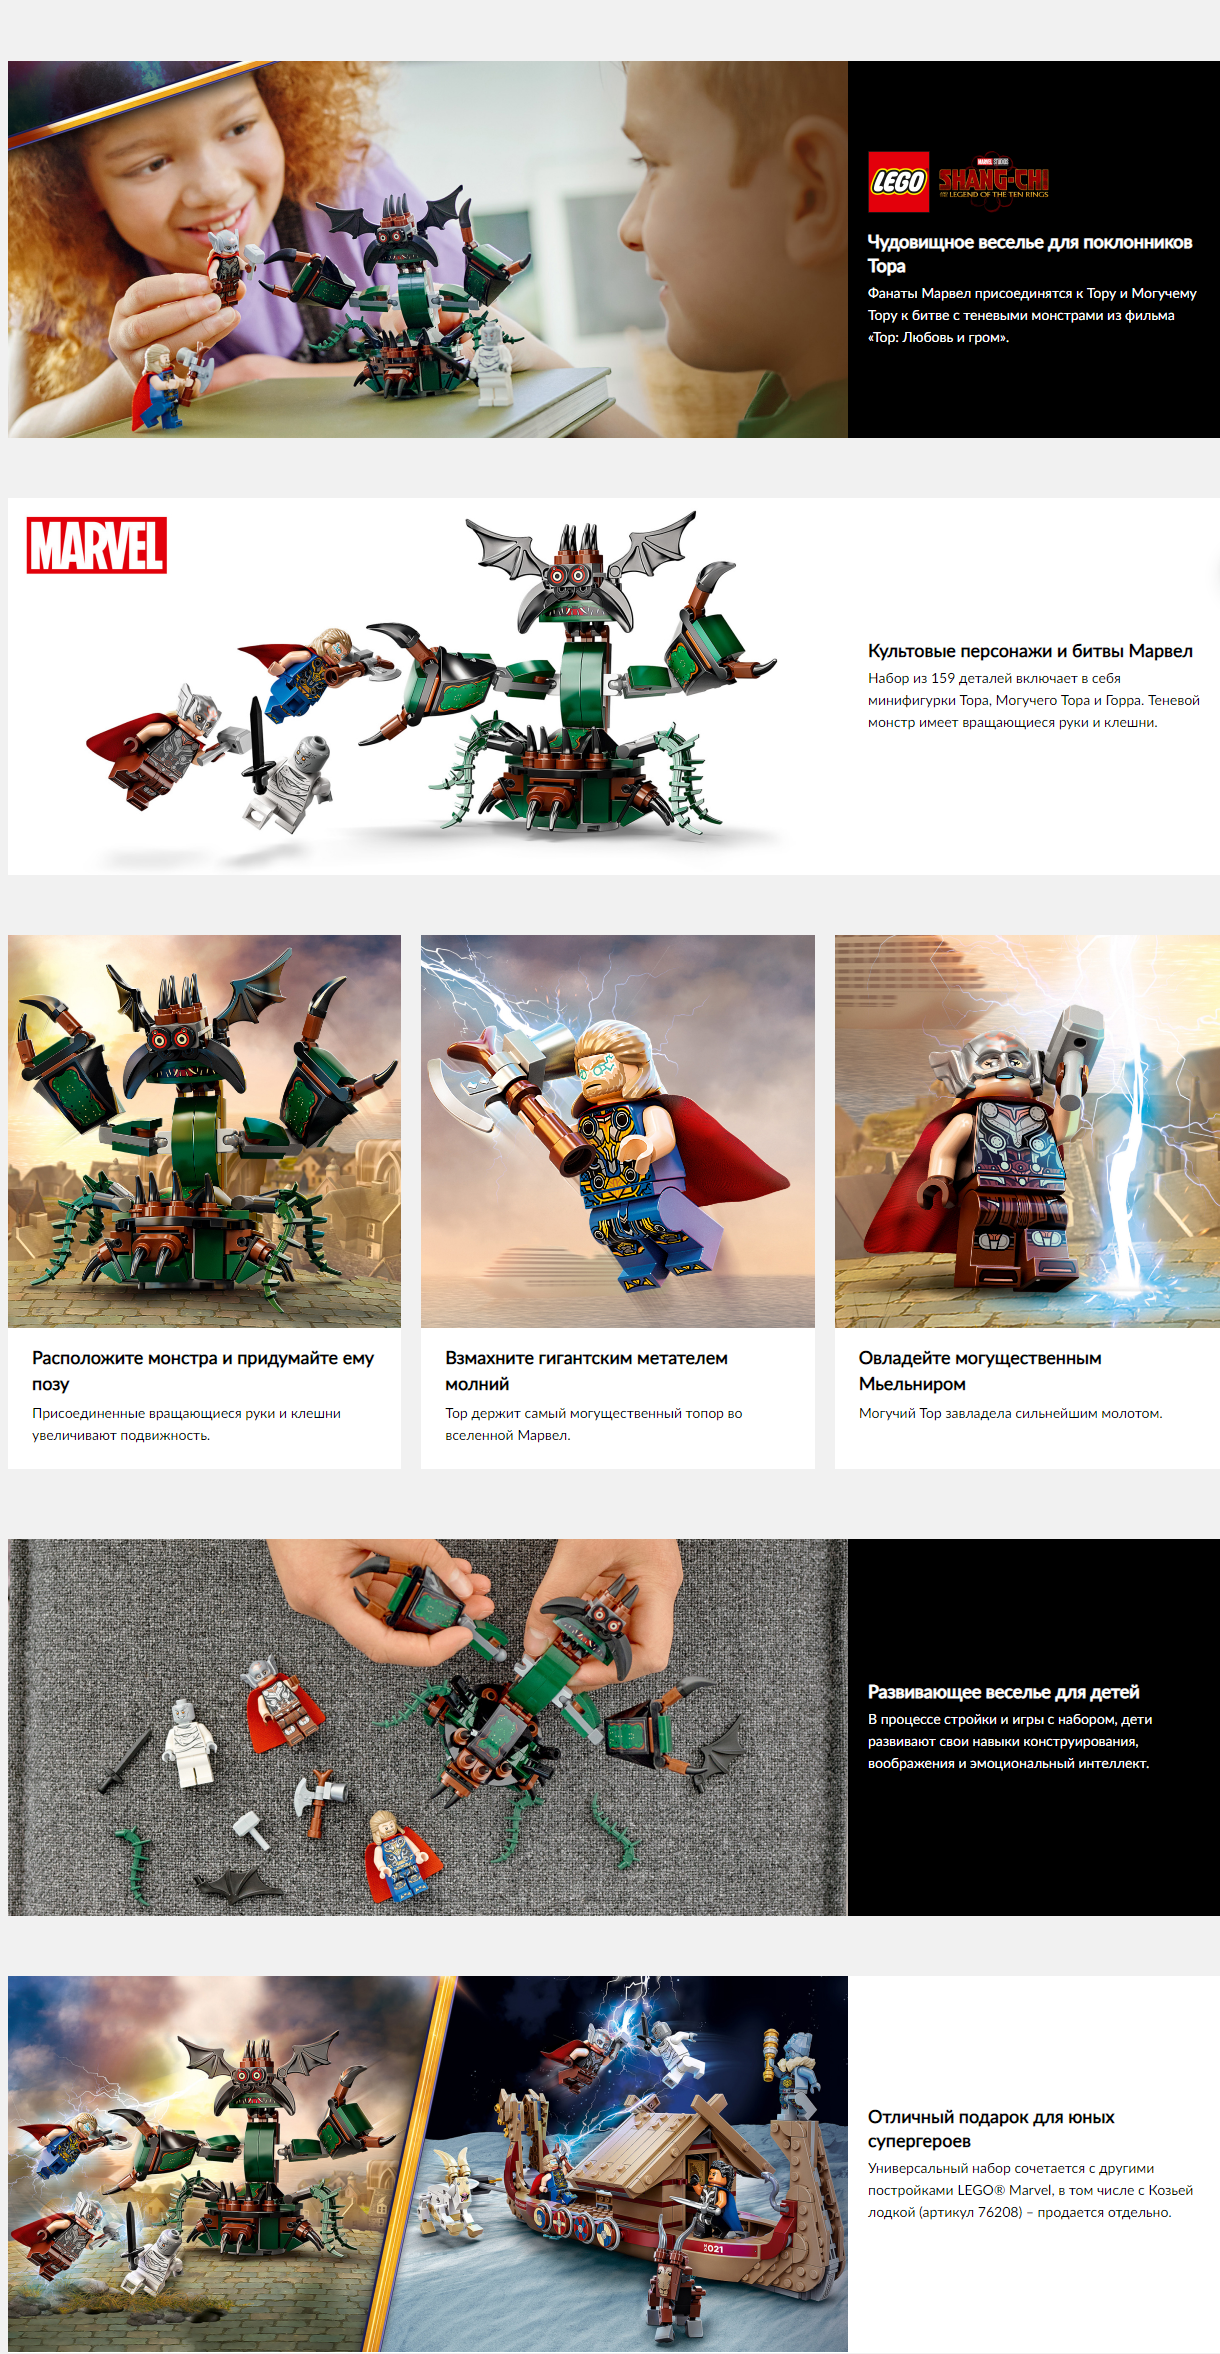 LEGO Строительная техника - основной набор, ЛЕГО купить онлайн – EduCube